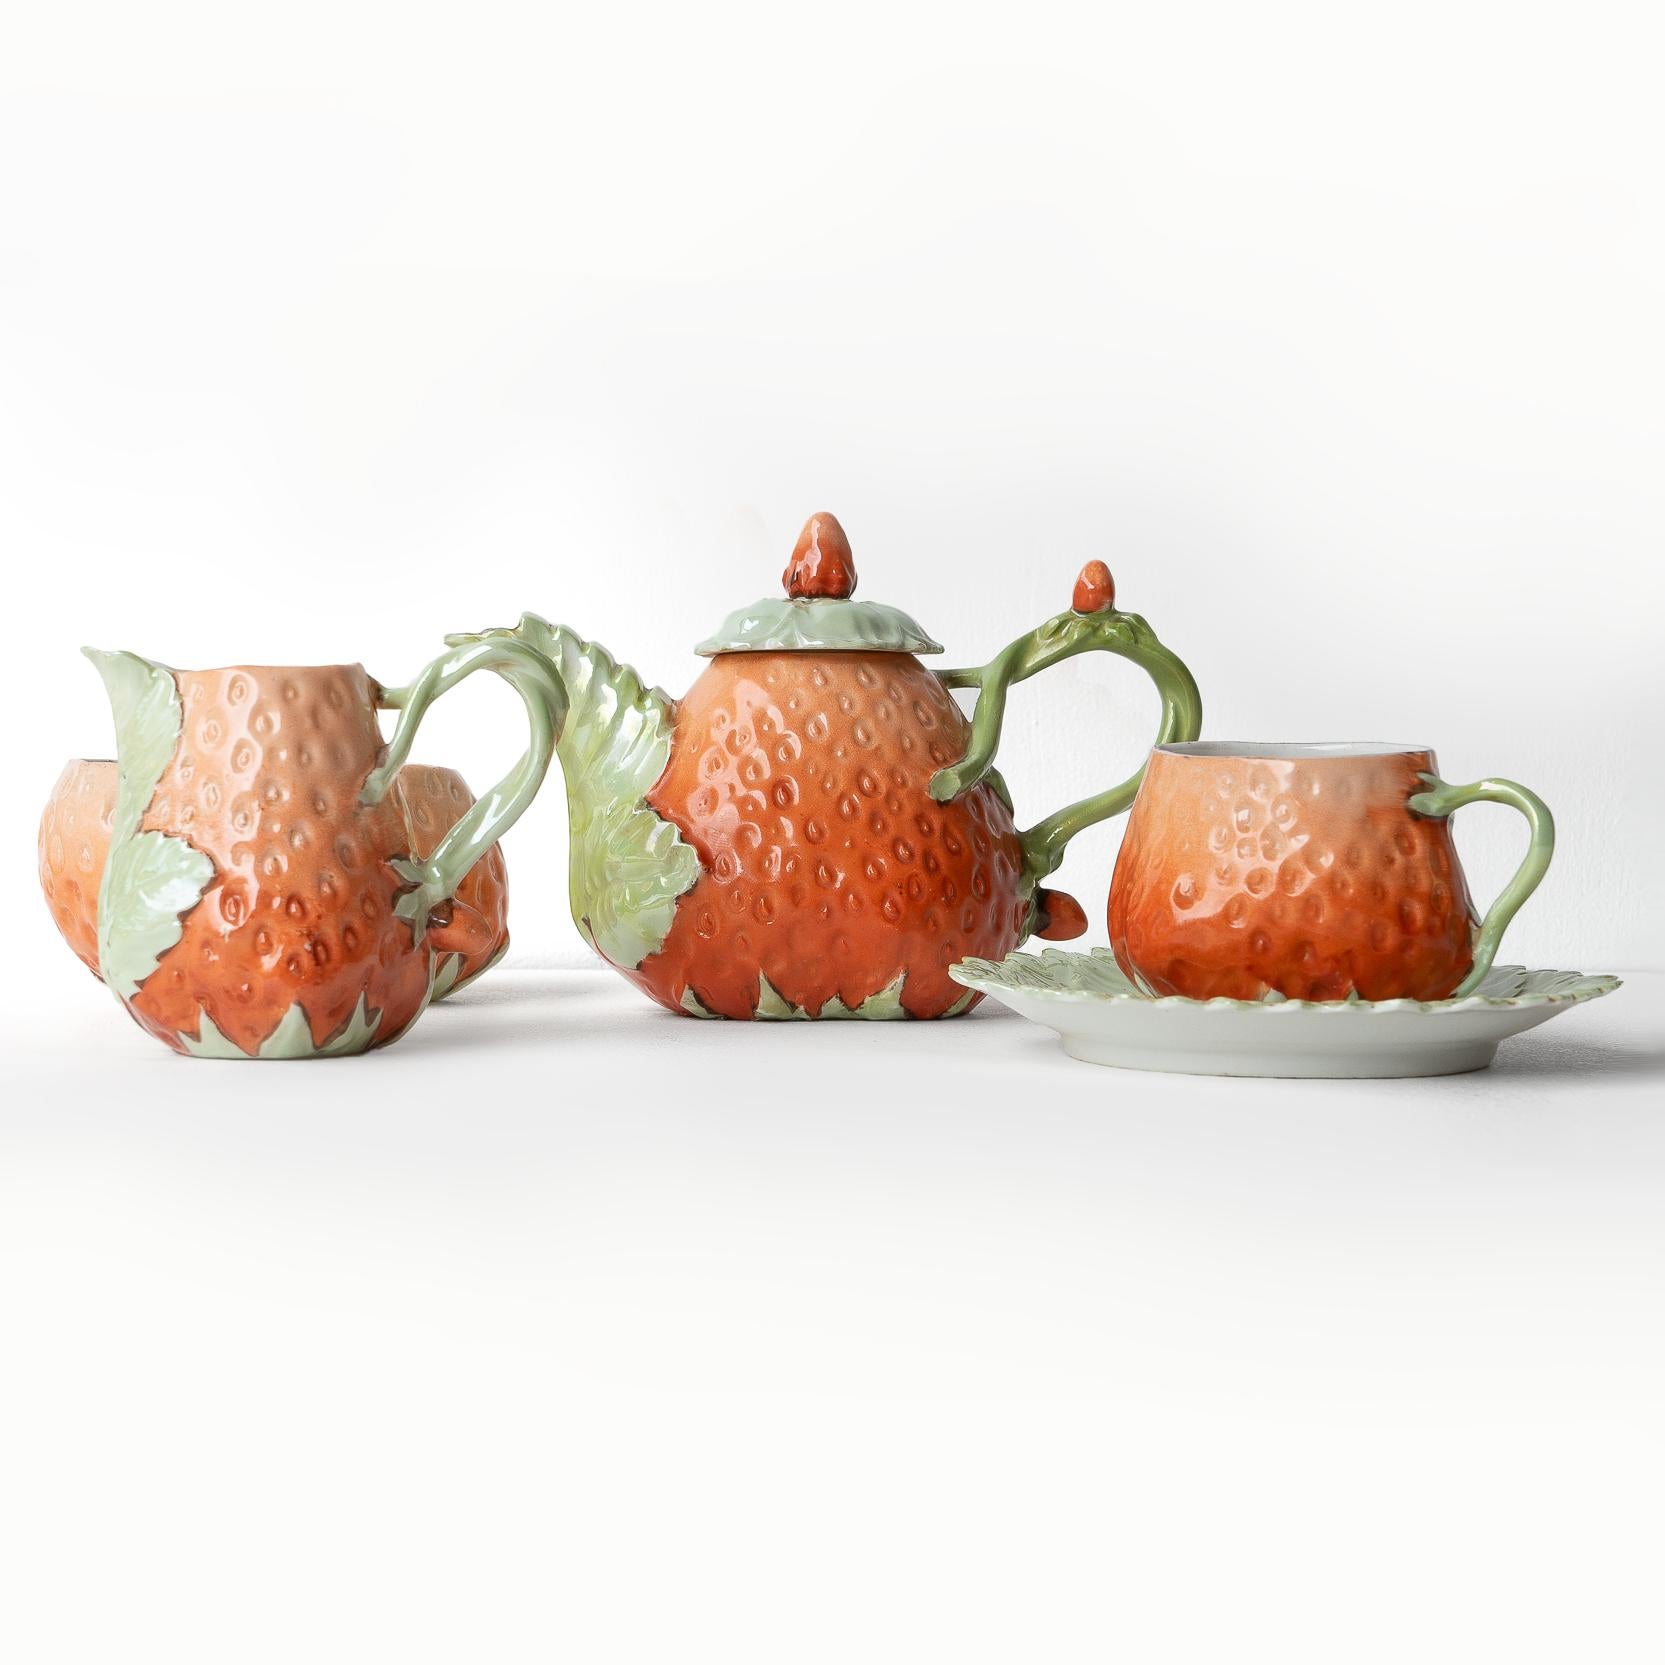 ANTIKES TEESERVICE
Das bezaubernde kleine Teeservice für eine Person, bestehend aus einer Teekanne mit Deckel, einem Milchkännchen, einer Zuckerdose und einer Tasse mit Untertasse.

Modelliert in Form von Erdbeeren und deren Blattwerk.

Sie stammt